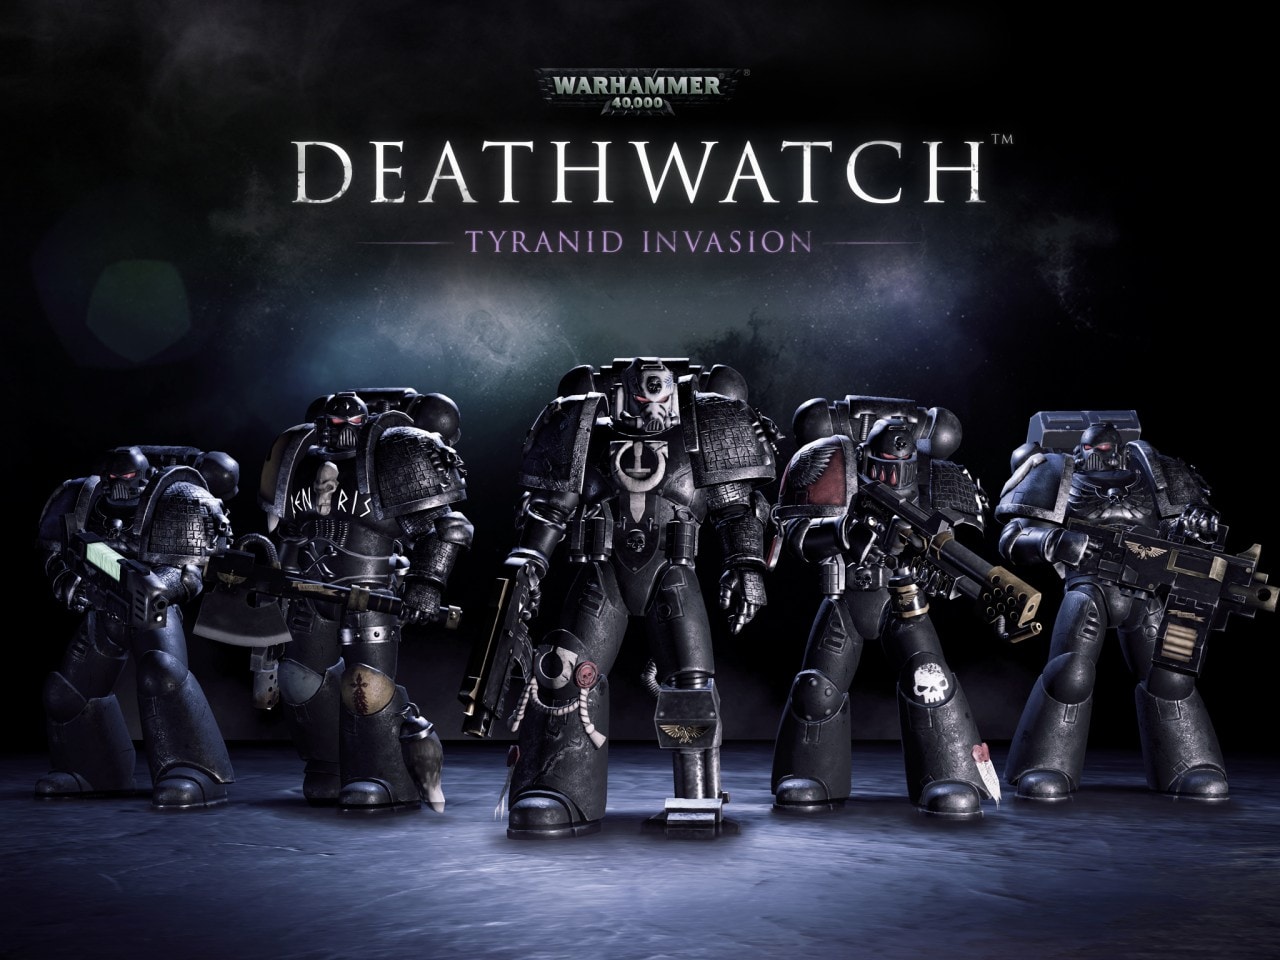 Scaricate gratis Warhammer 40,000: Deathwatch per iOS!